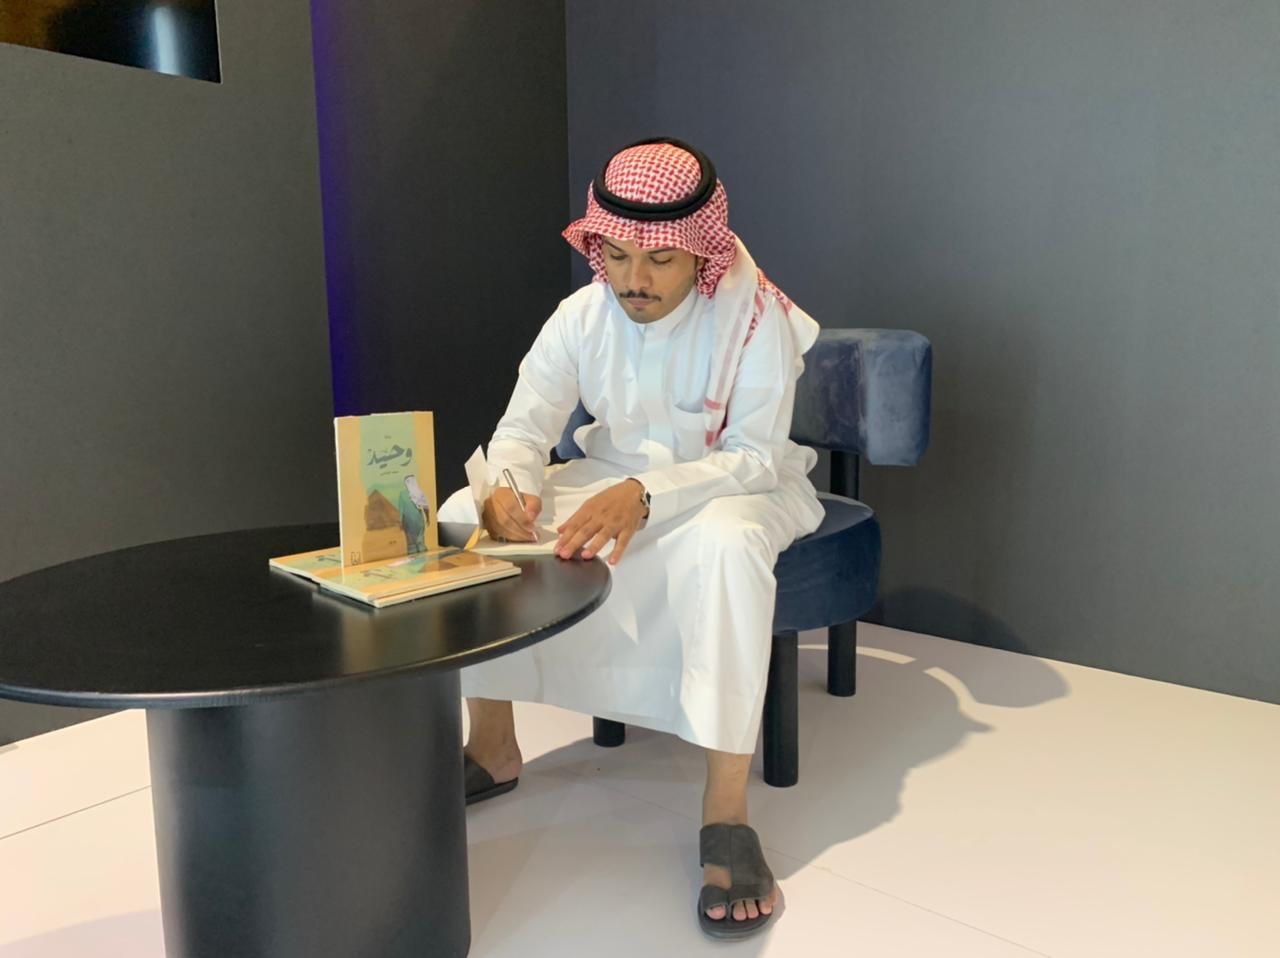 سعد الغنامي يوقع رواية وحيد في معرض الرياض للكتاب 21